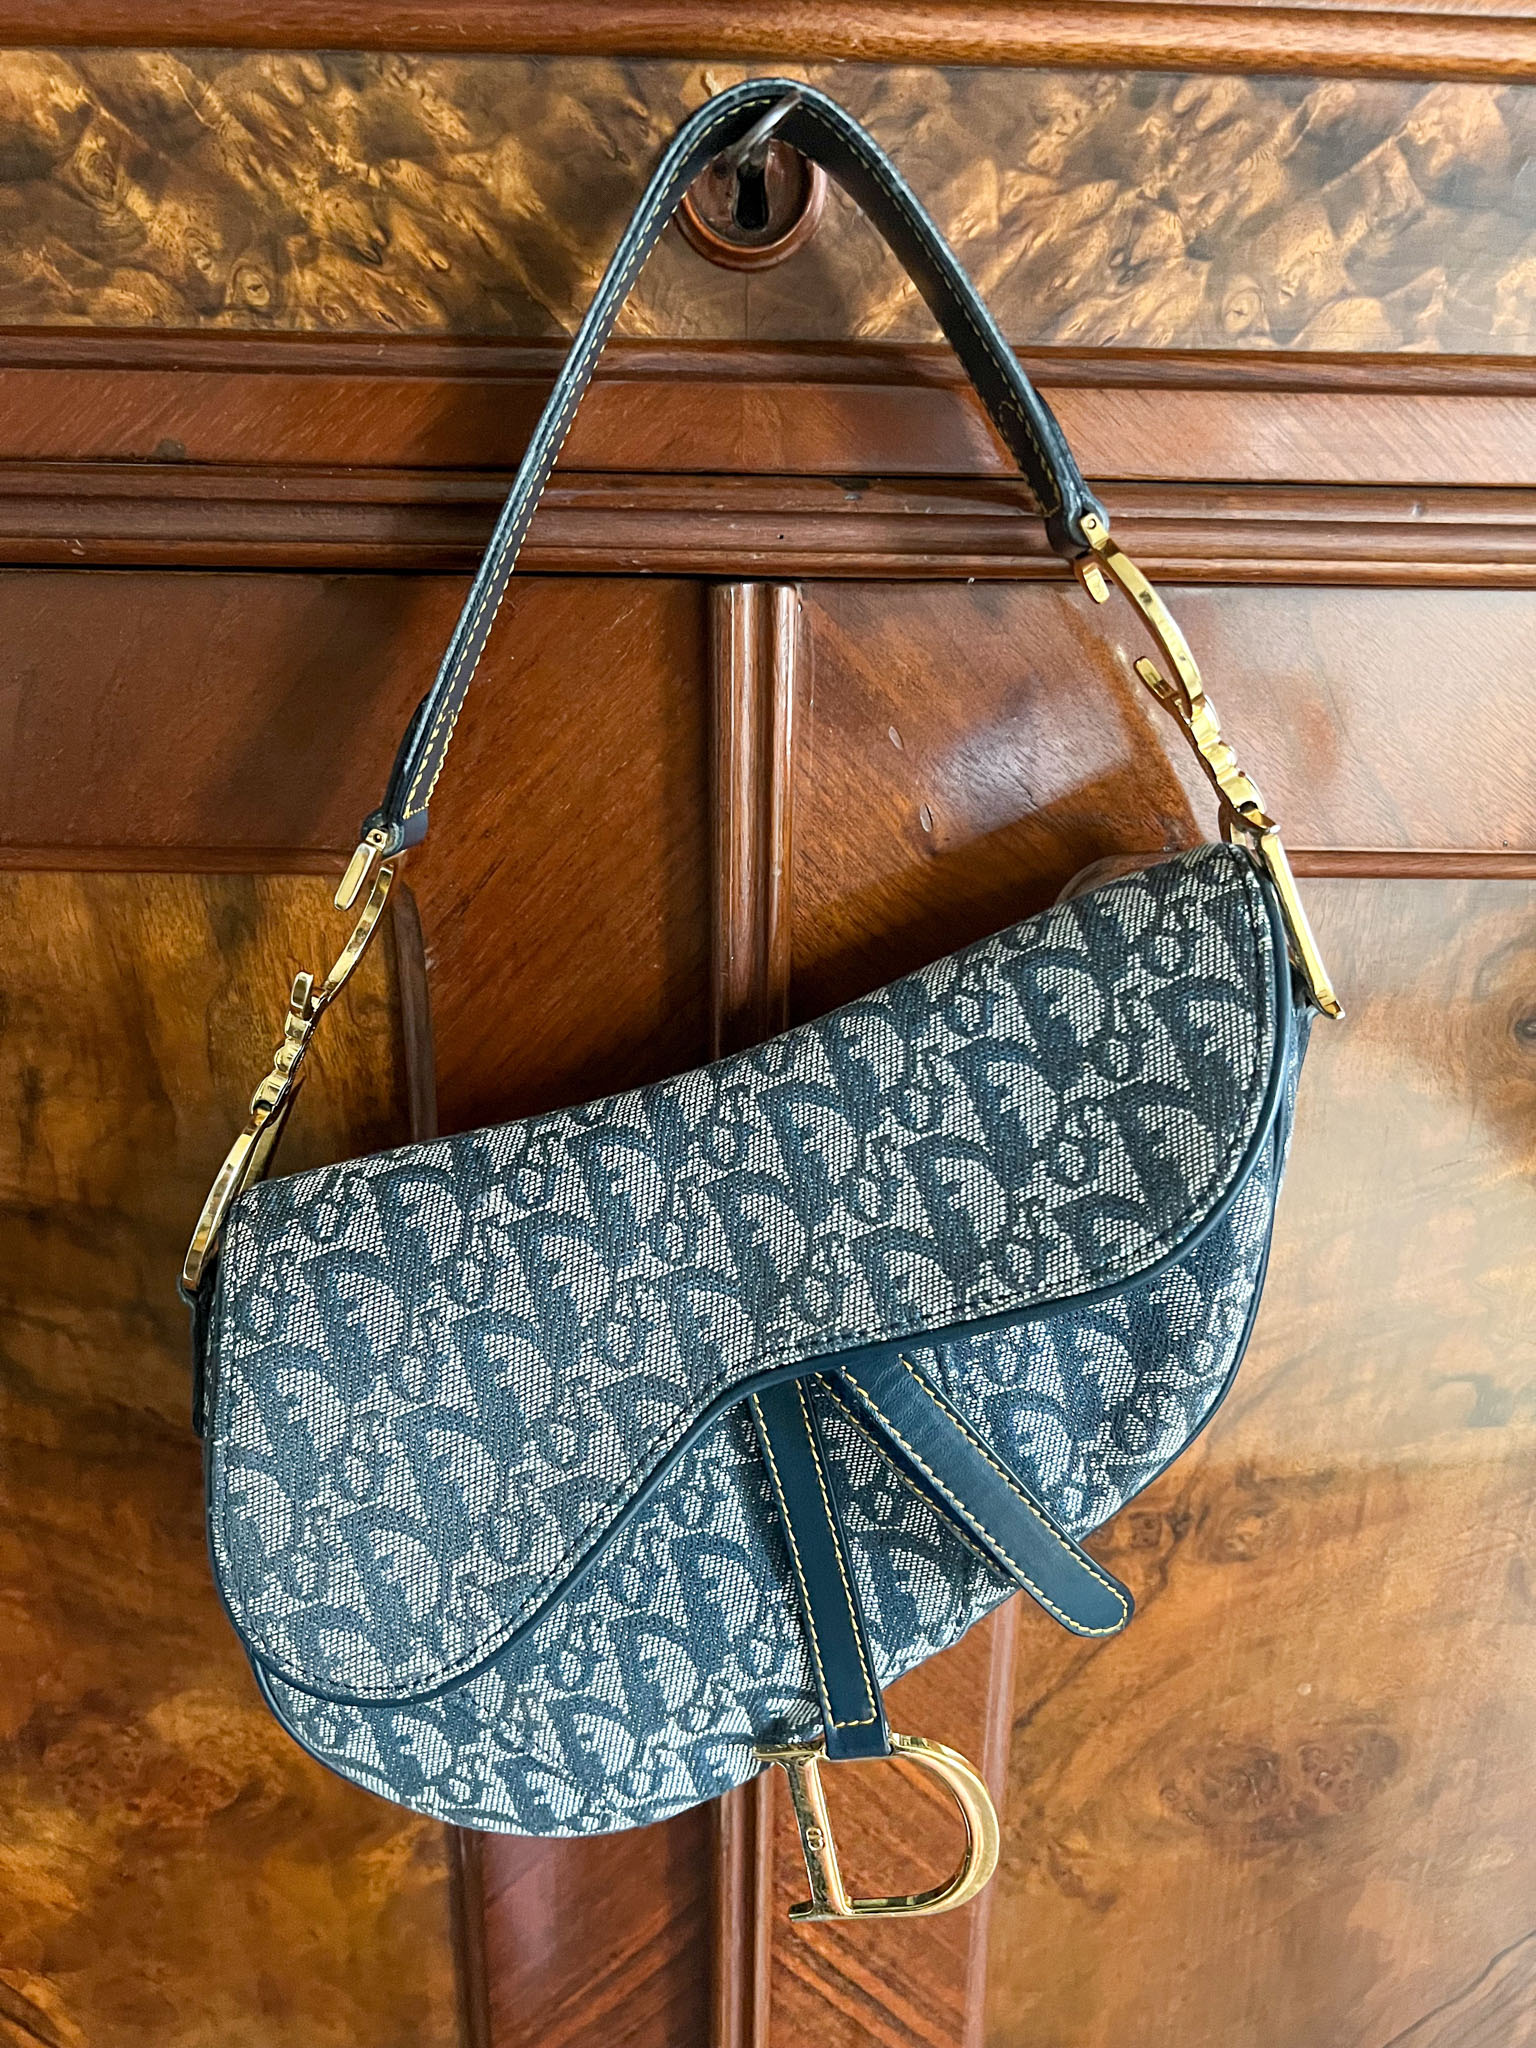 Handbag Review: Dior Saddle Bag - The Brunette Nomad